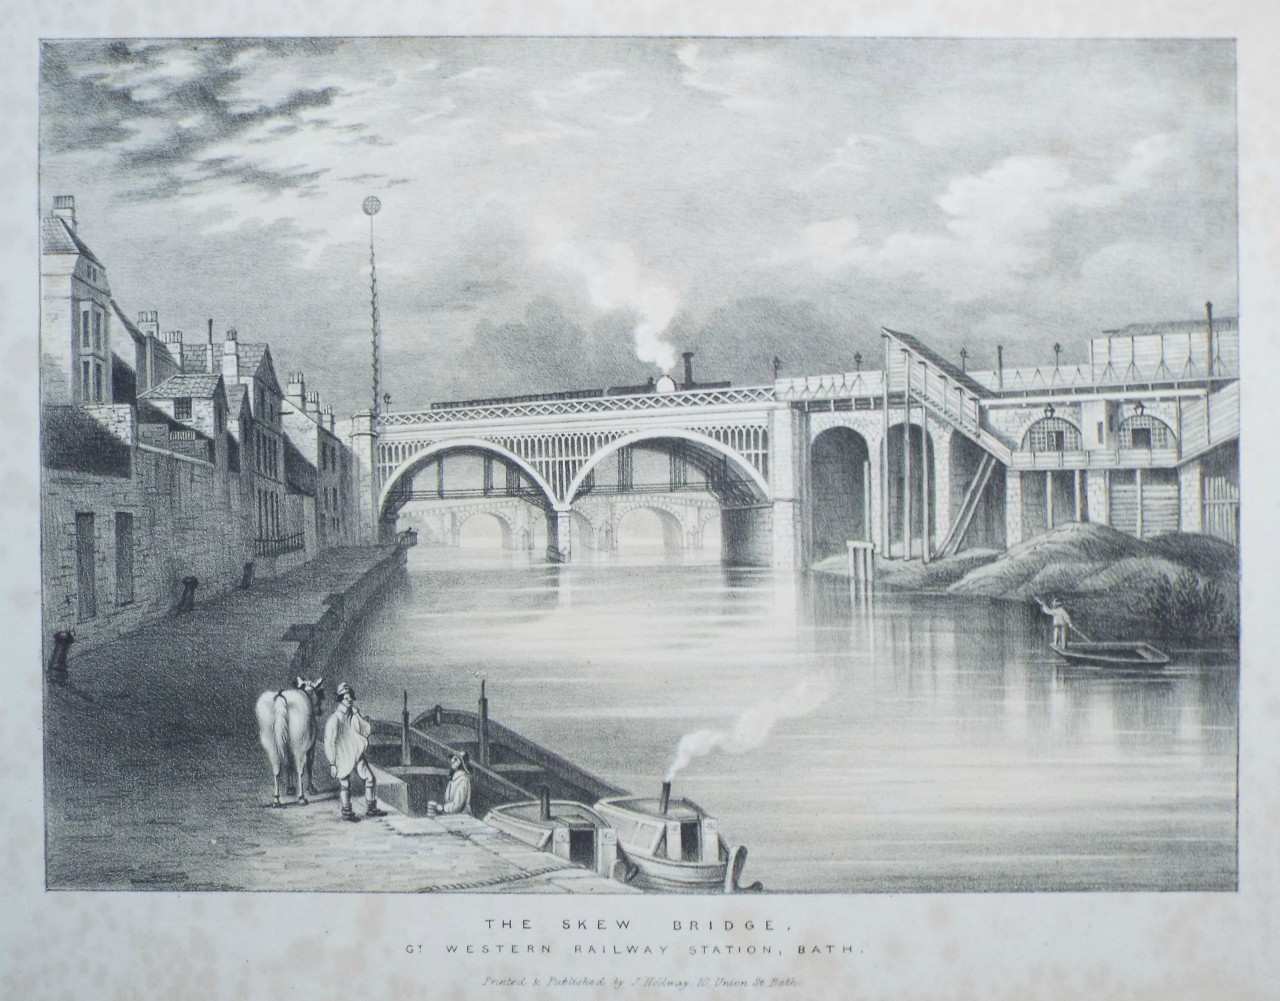 Lithograph - The Skew Bridge, Gt. Western Railway Station, Bath.